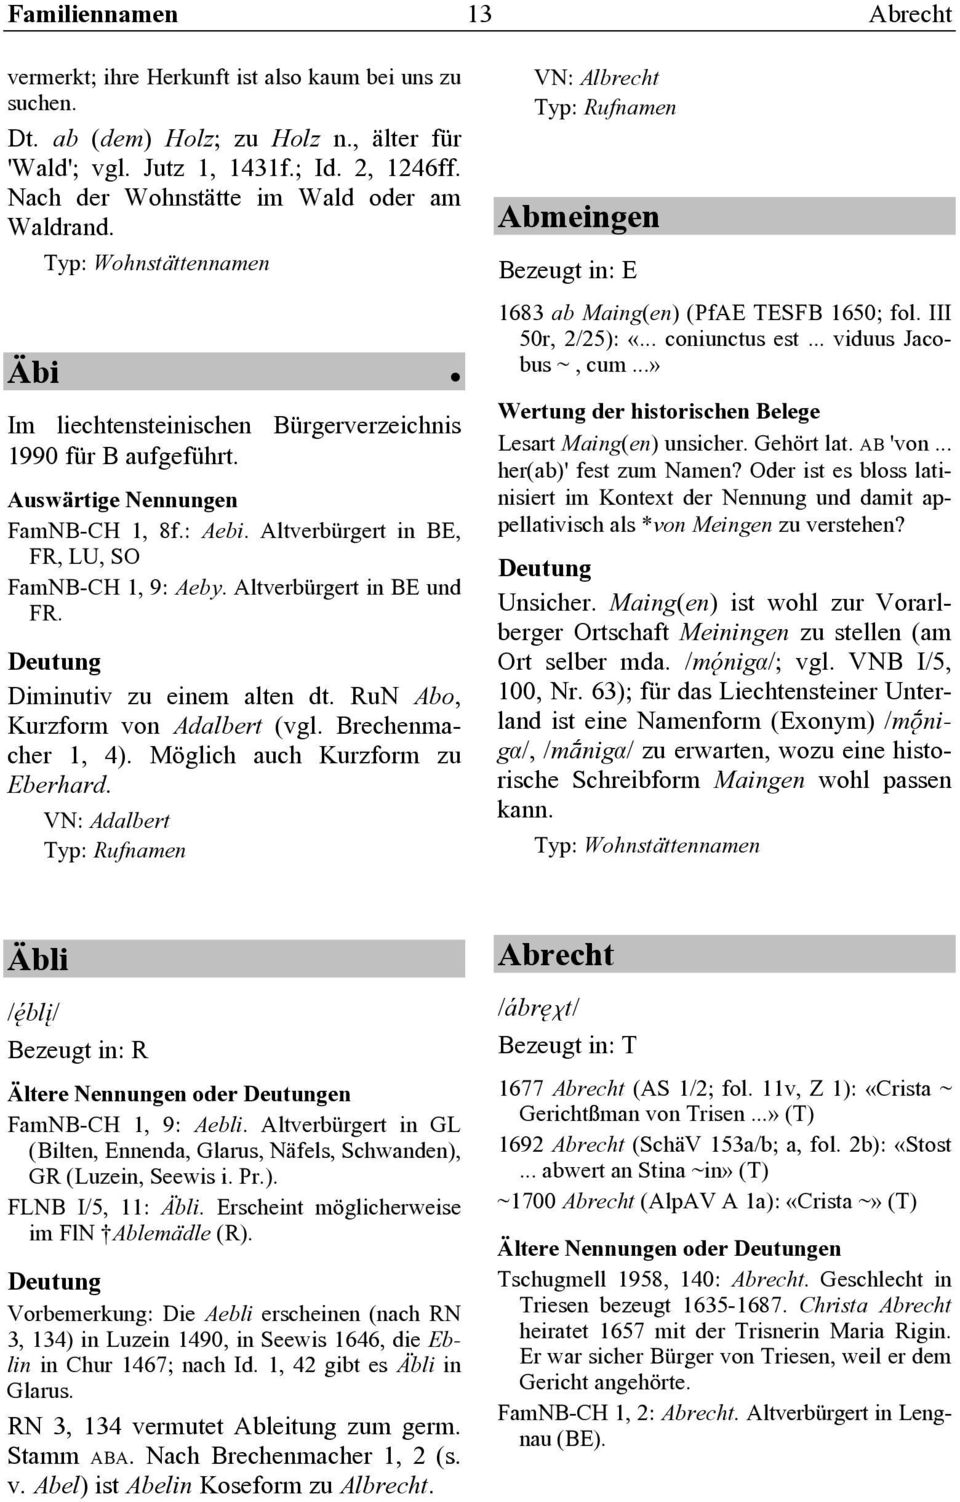 Diminutiv zu einem alten dt. RuN Abo, Kurzform von Adalbert (vgl. Brechenmacher 1, 4). Möglich auch Kurzform zu Eberhard.